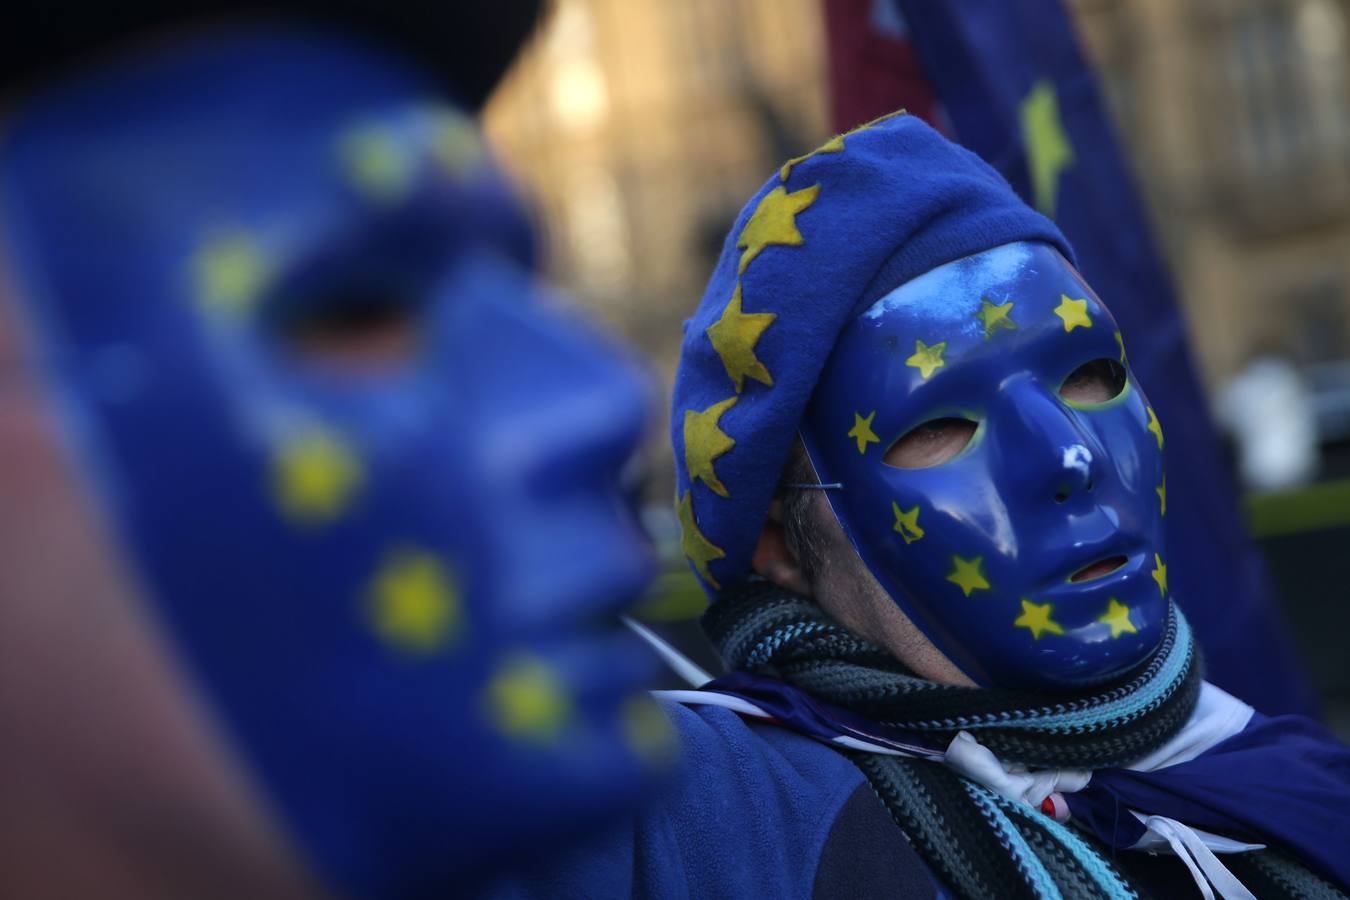 Los manifestantes pro-Unión Europea, (UE) y anti-Brexit usan máscaras con la bandera de la UE, ya que sostienen una bandera de la Unión fuera del Parlamento en el centro de Londres el 18 de diciembre de 2017. / AFP PHOTO / 